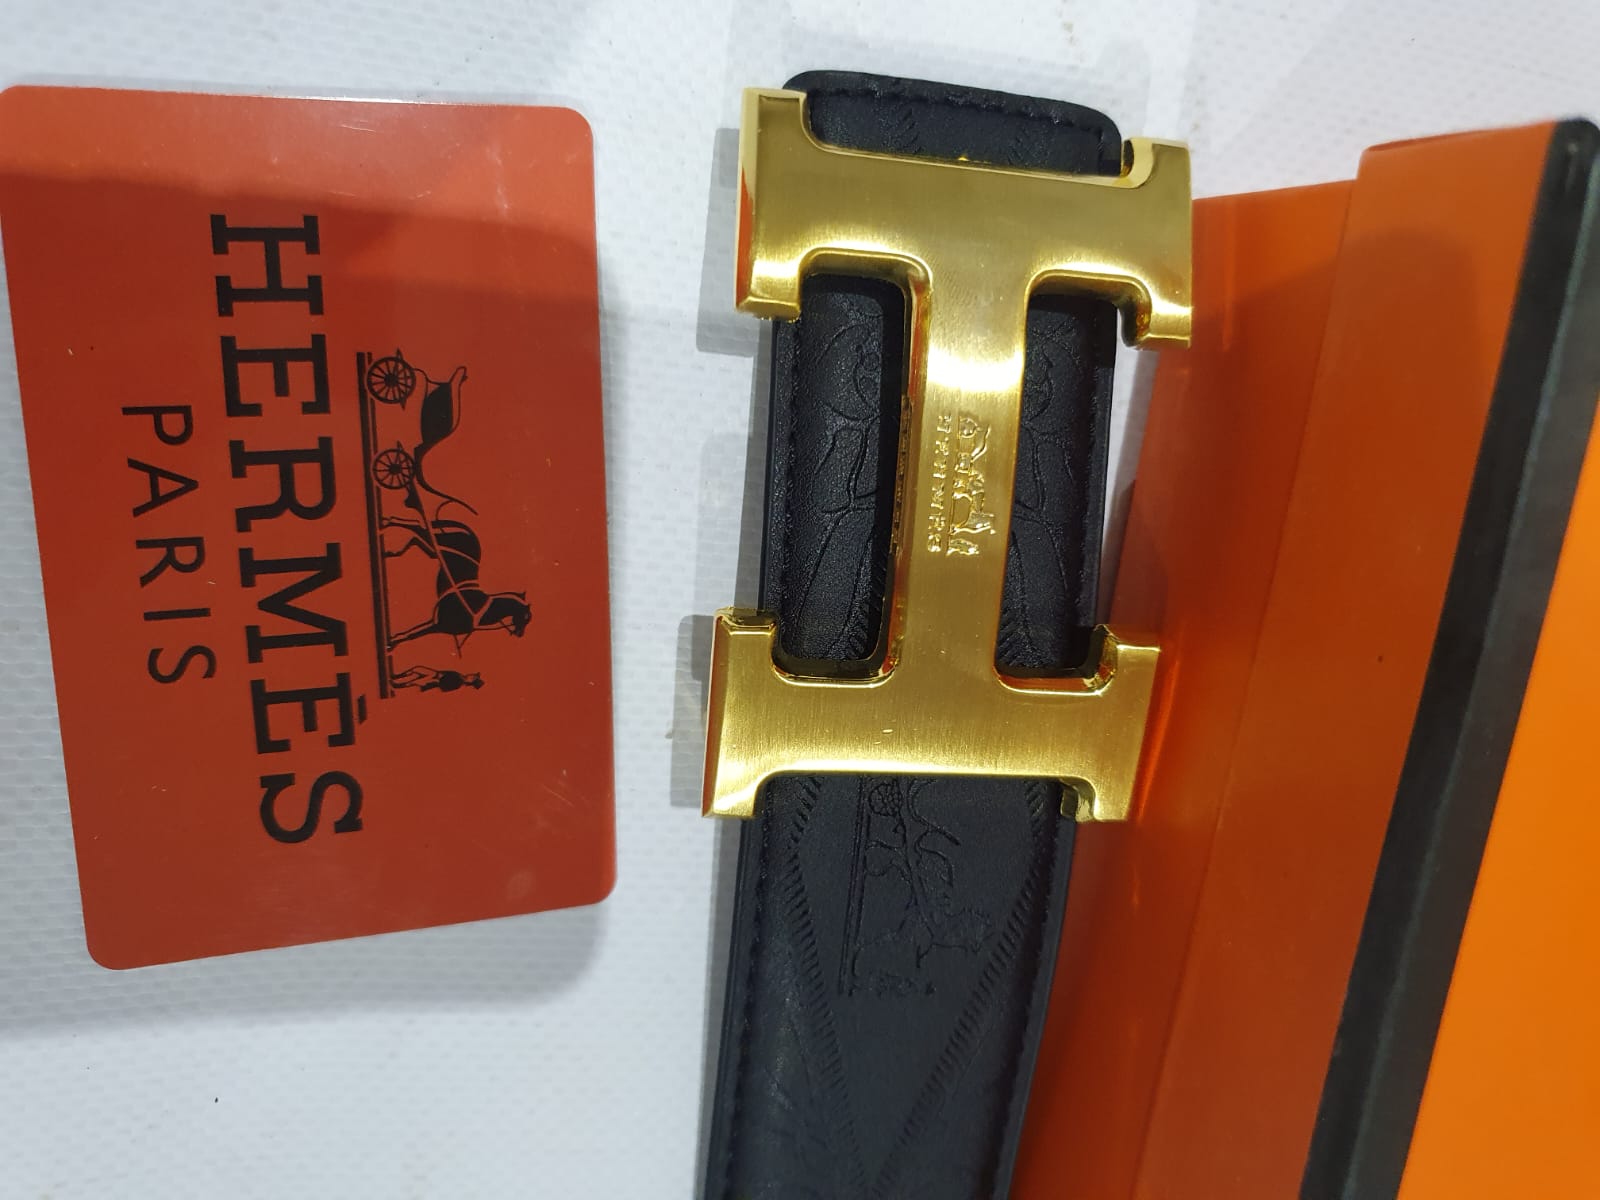 Hermès Belt